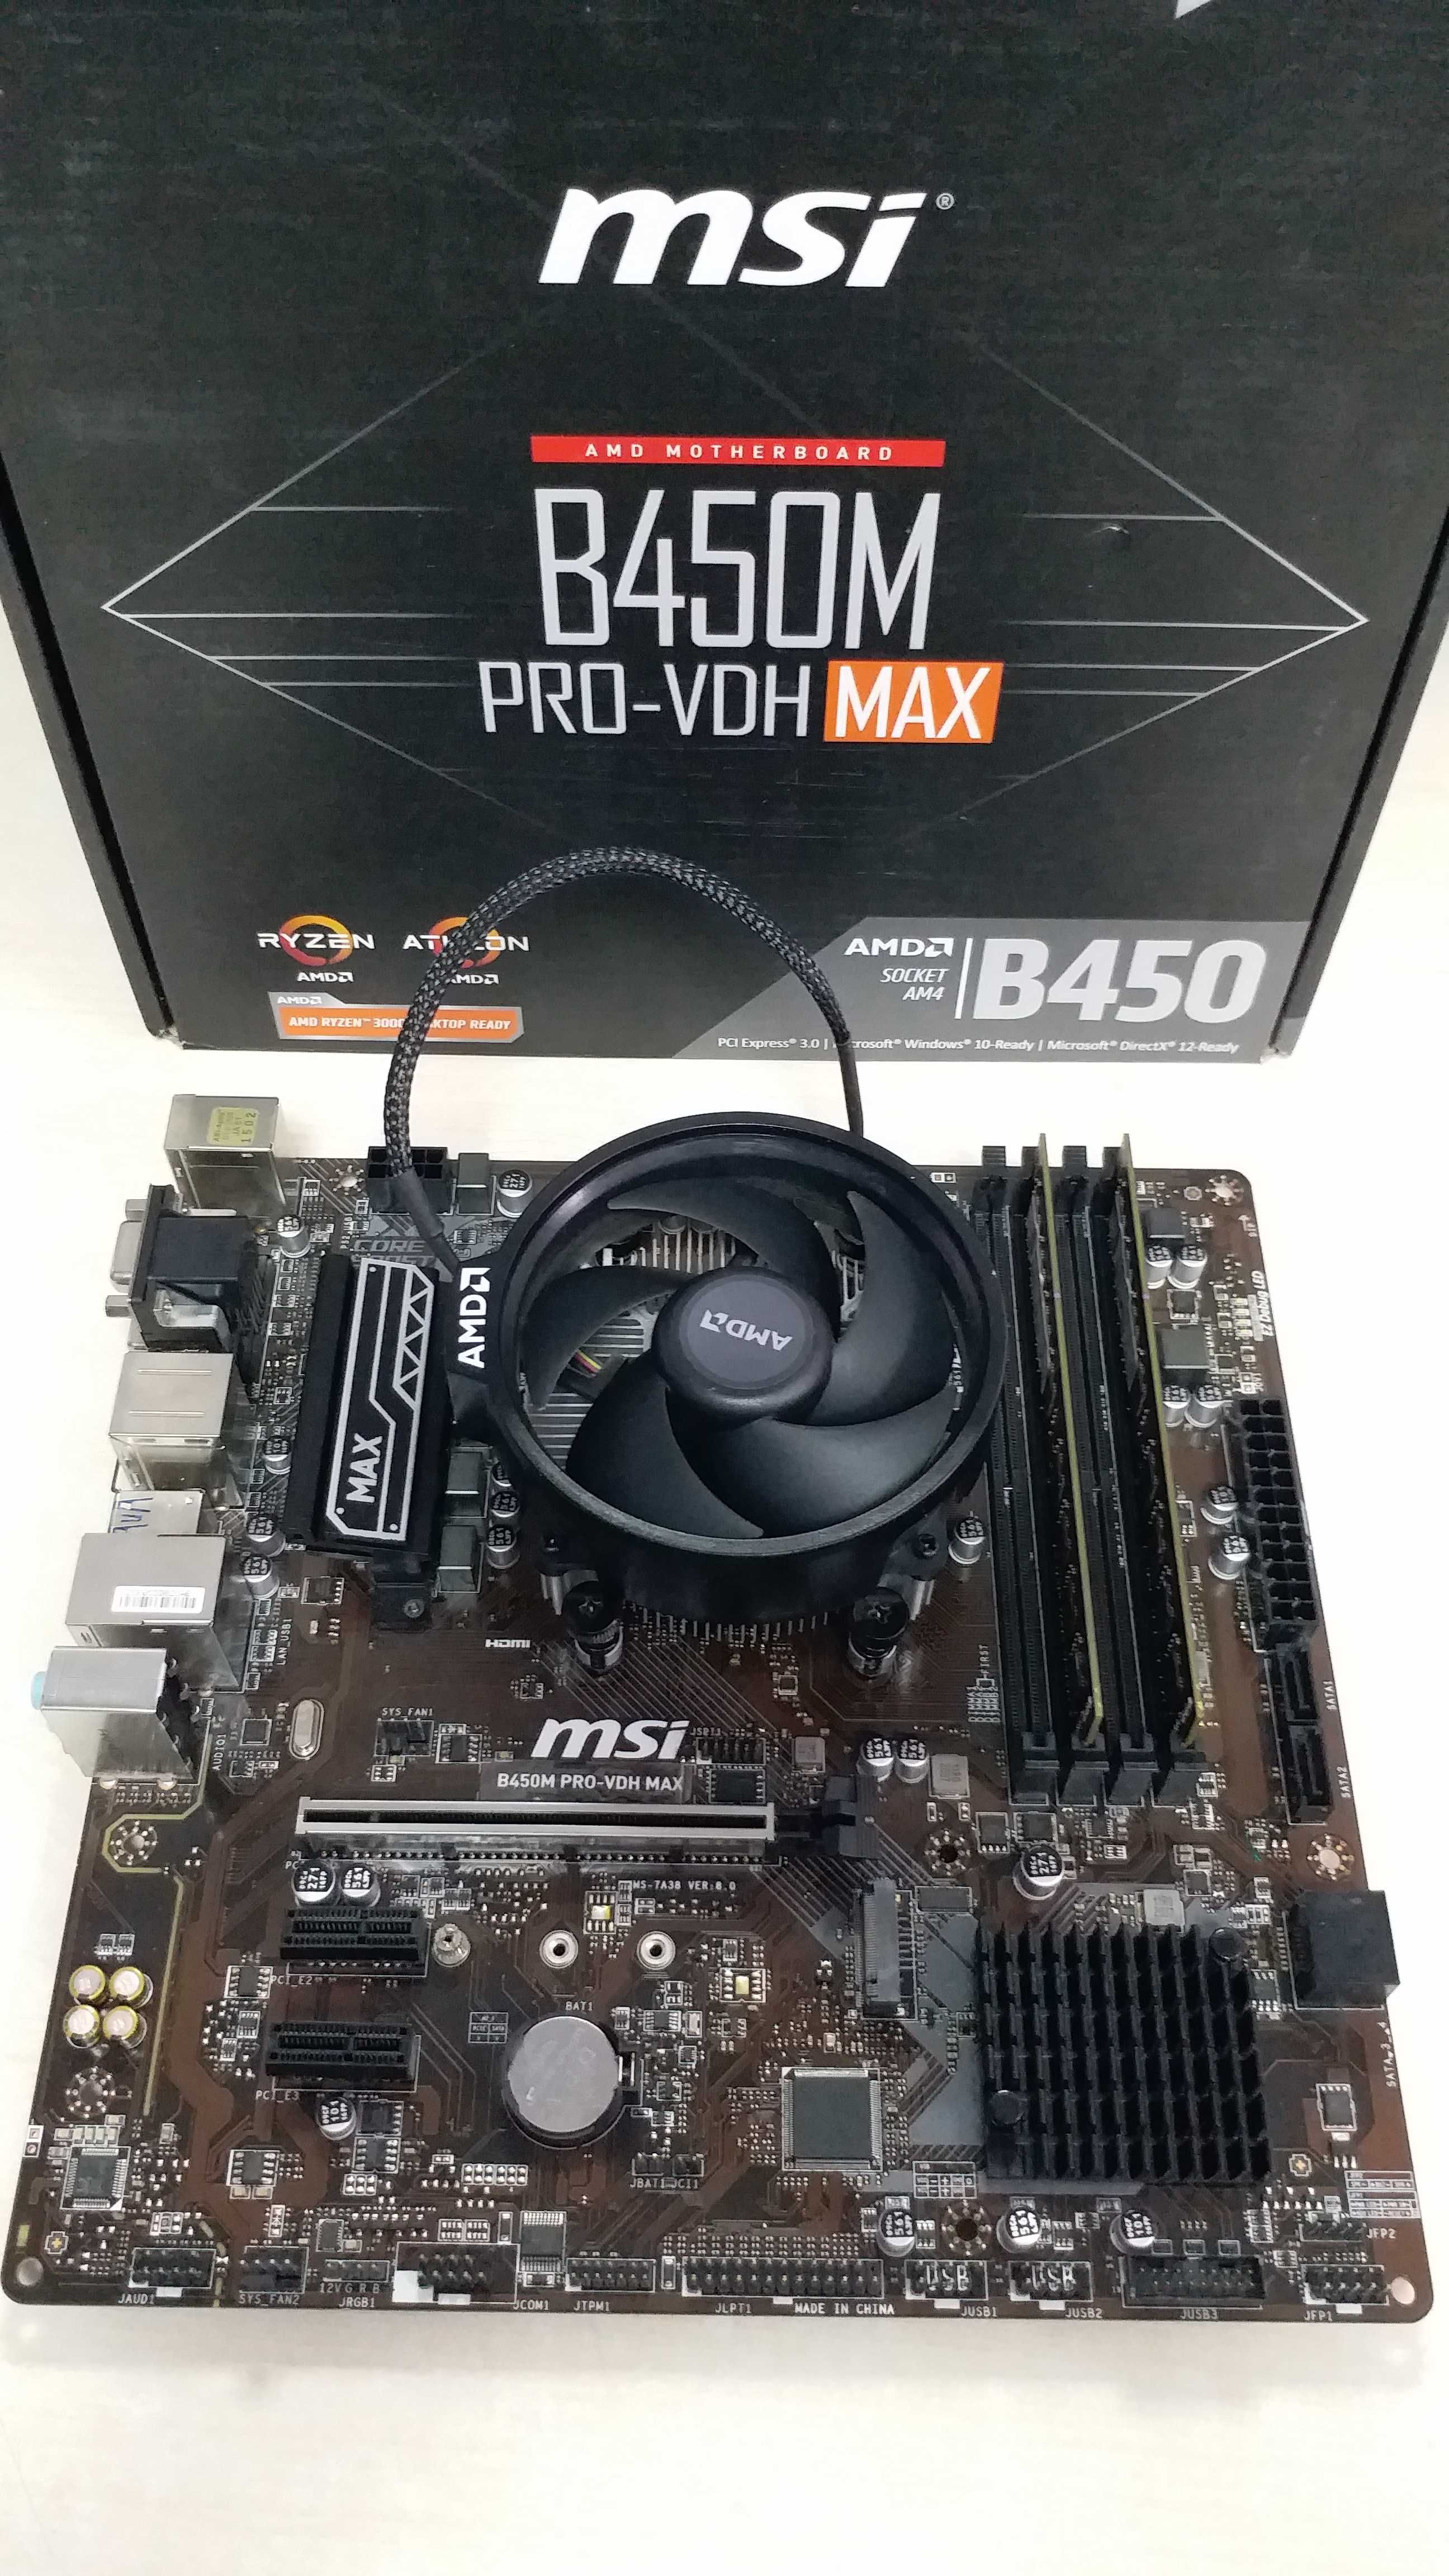 Комплект: B450M PRO-VDH Mах+Ryzen 5 2400GE PRO+DDR4 8Gb